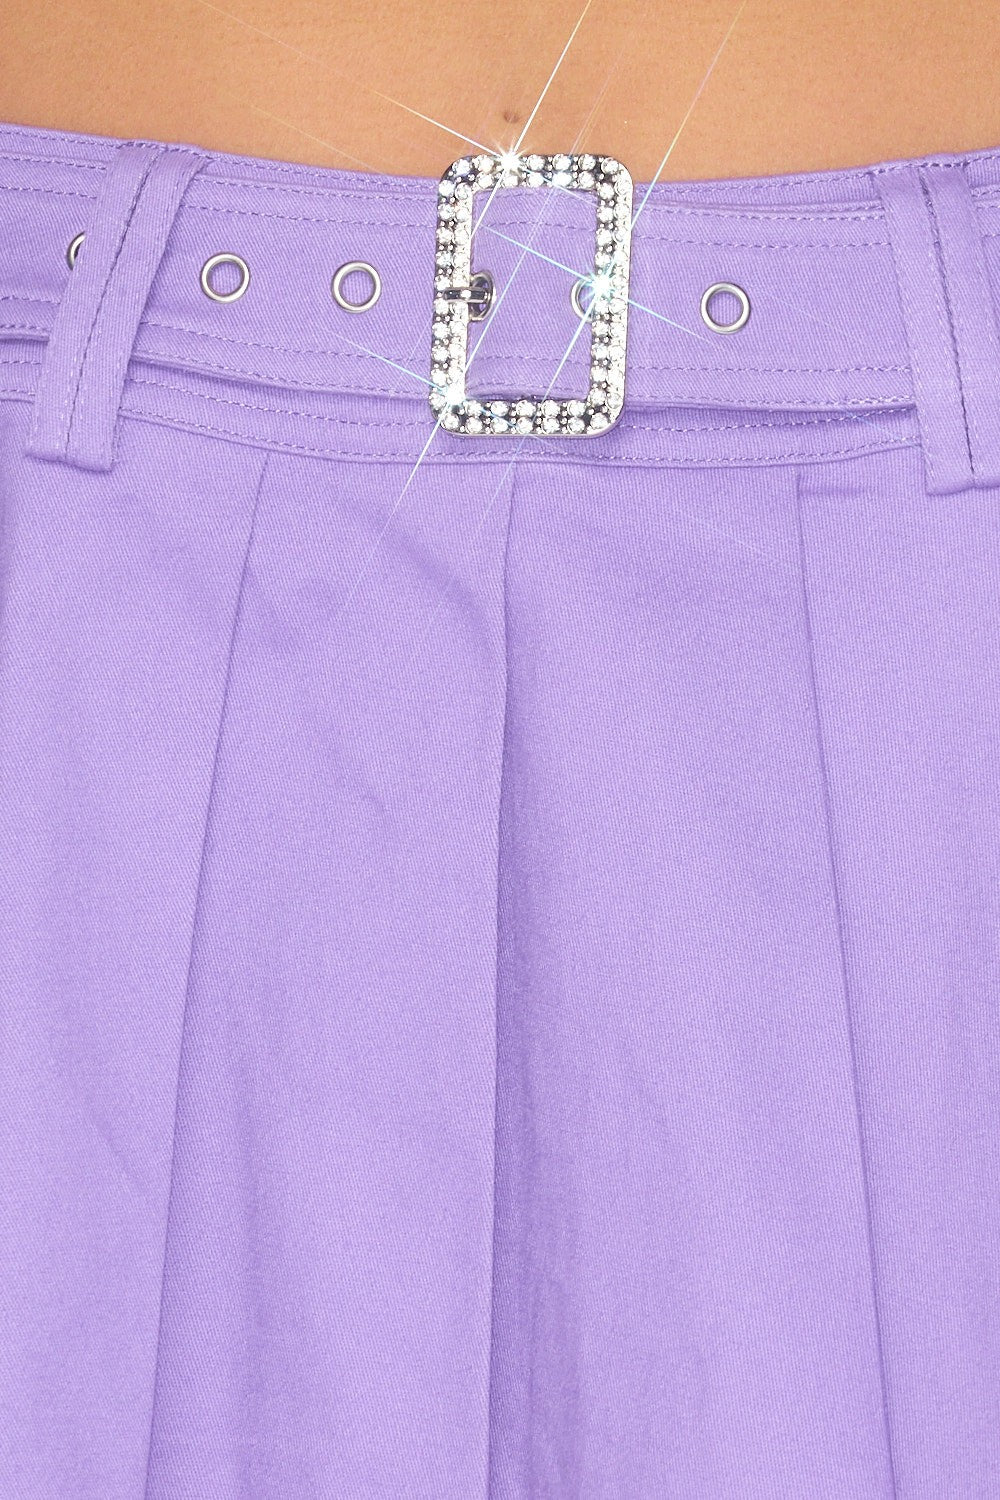 Play Nice Pleated Rhinestone Belted Mini Skirt